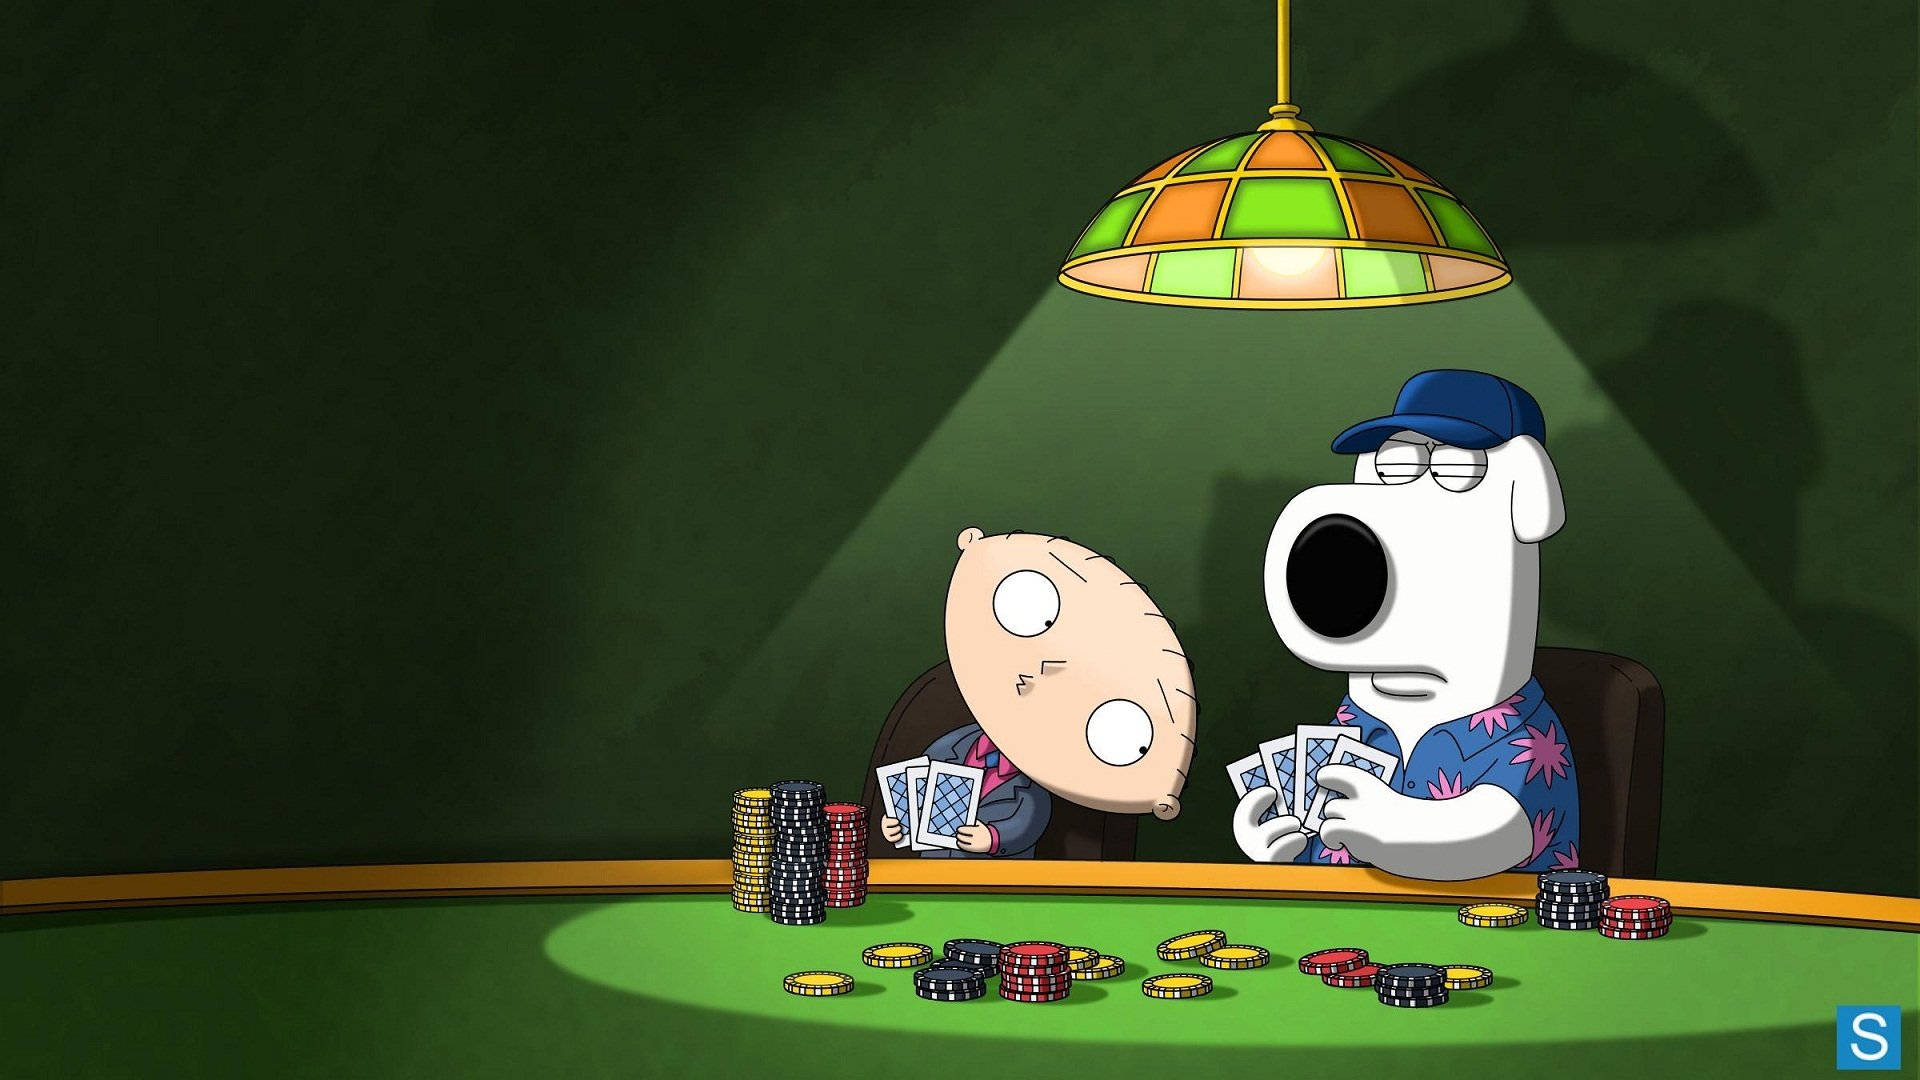 Pokertisch In Family Guy Wallpaper